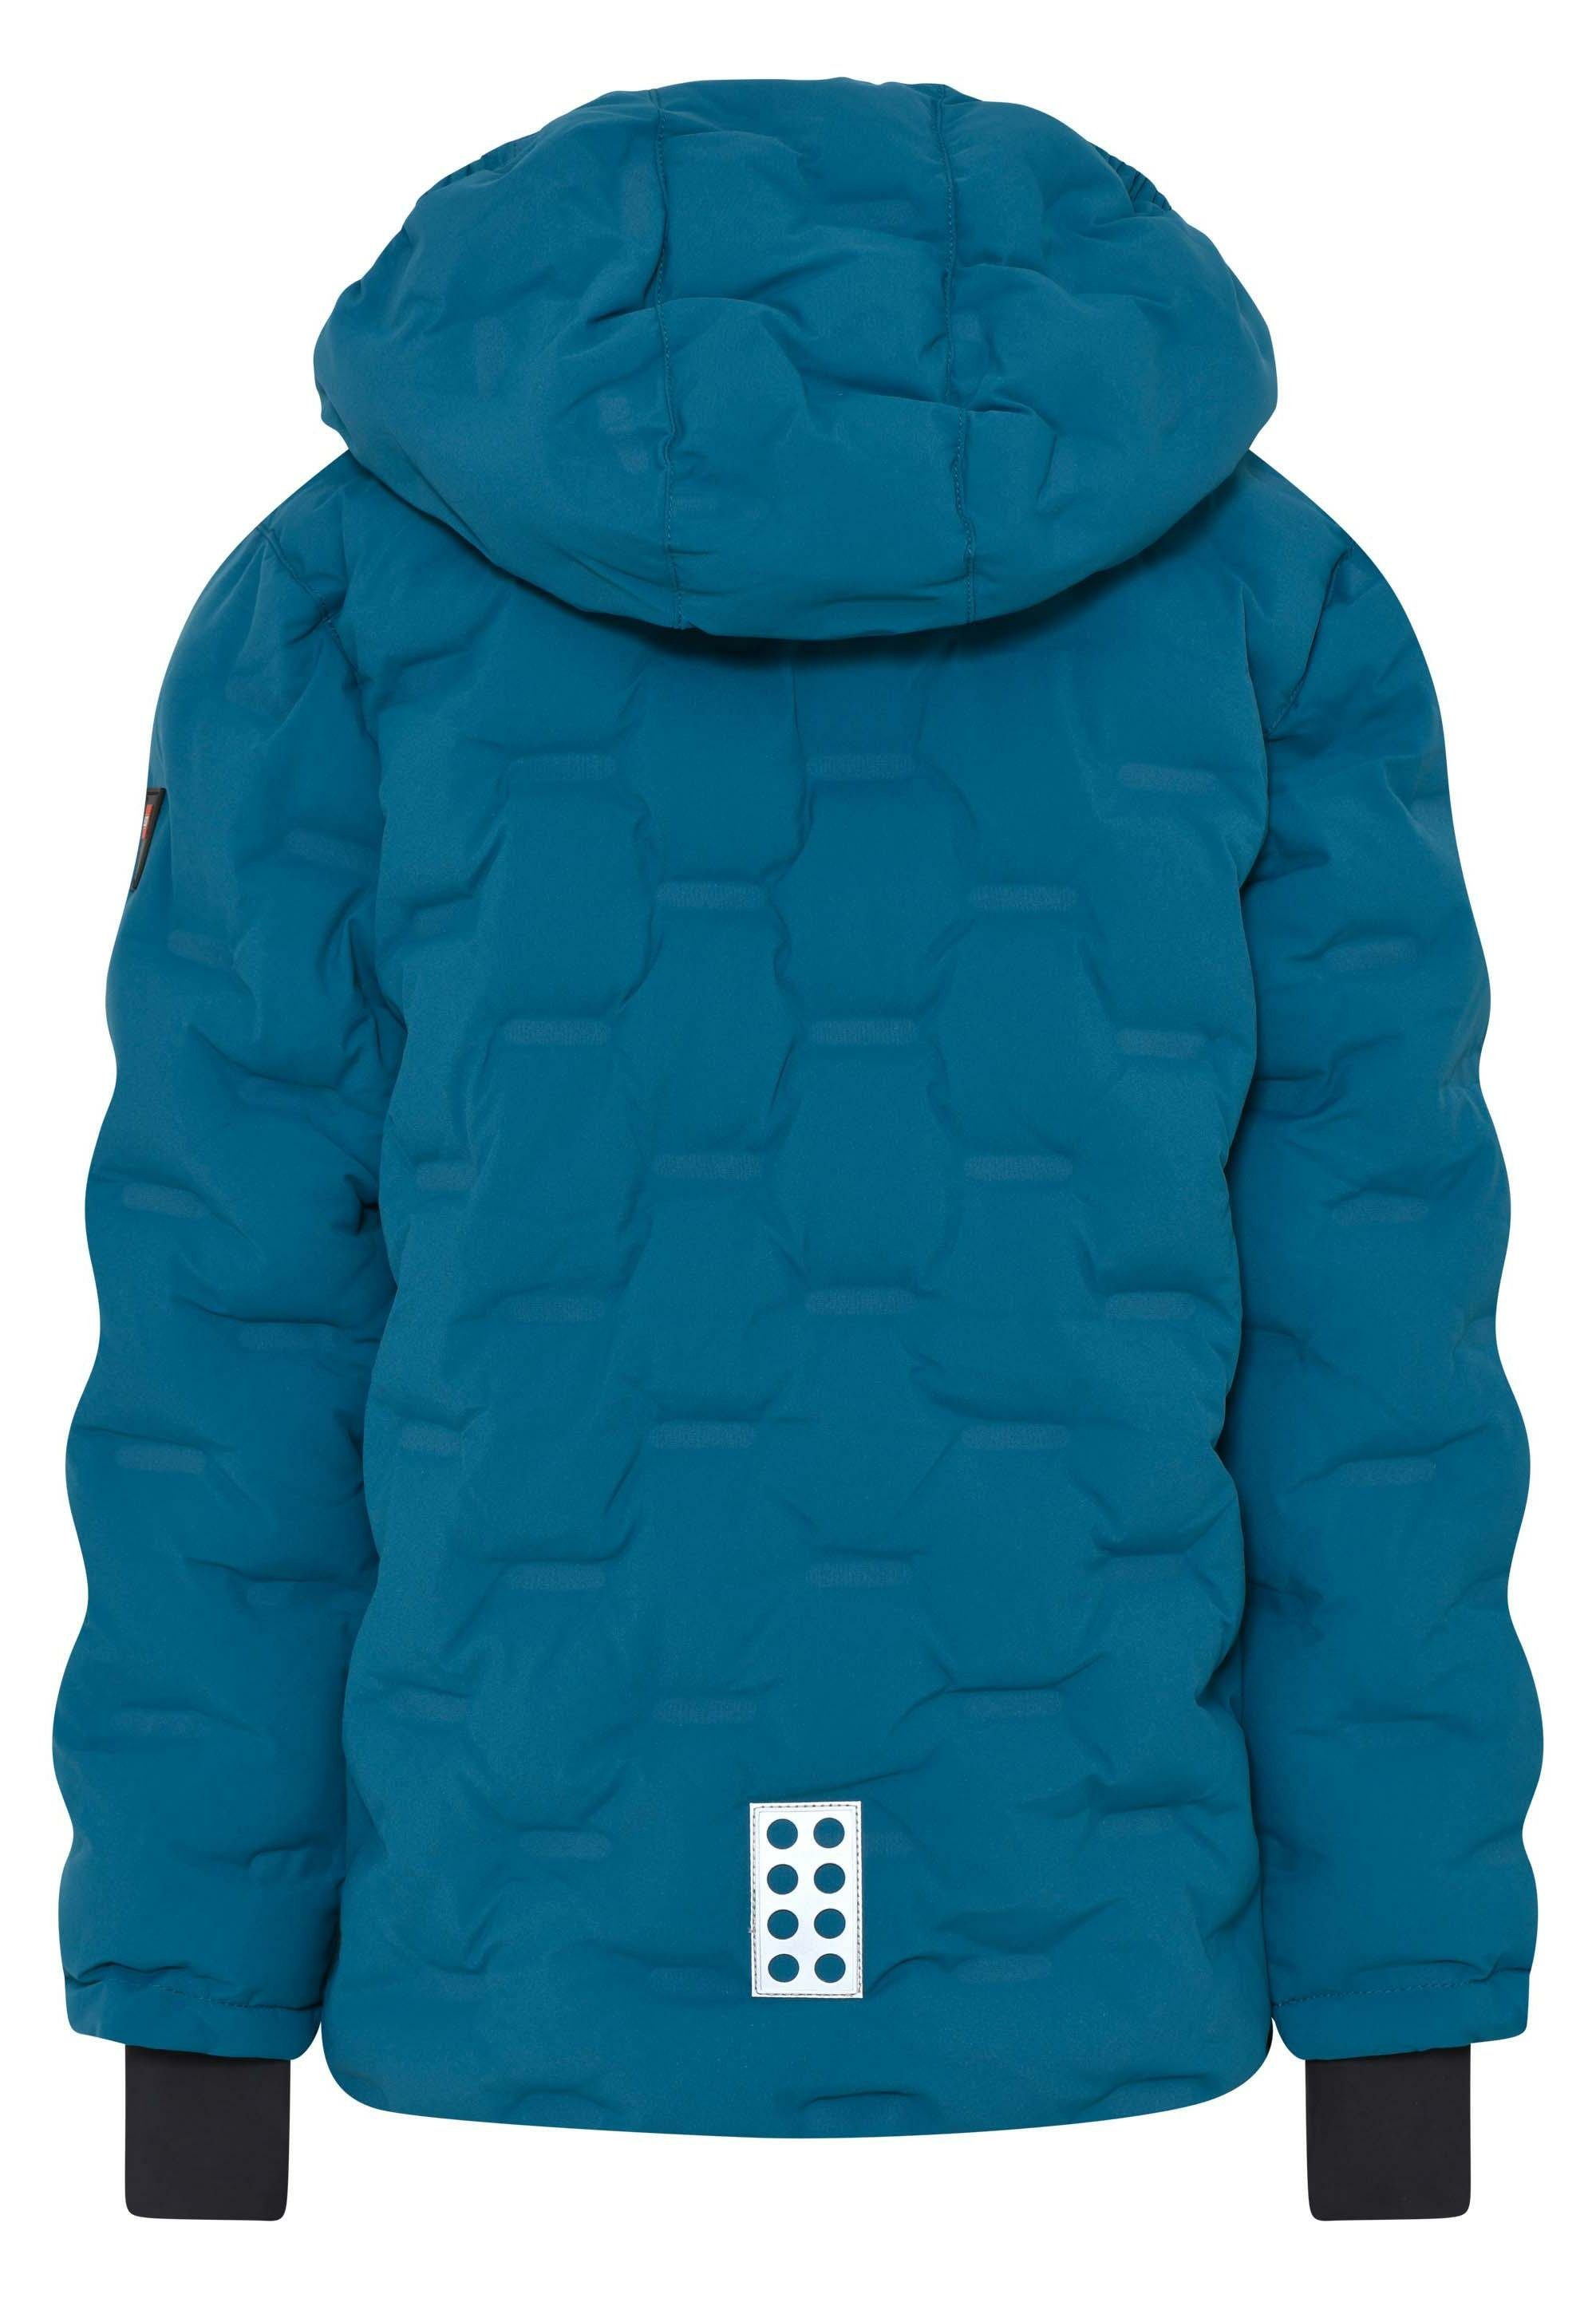 Winterjacke LWJIPE blue Wear 706 Wasserabweisend, reflektierend LEGO®